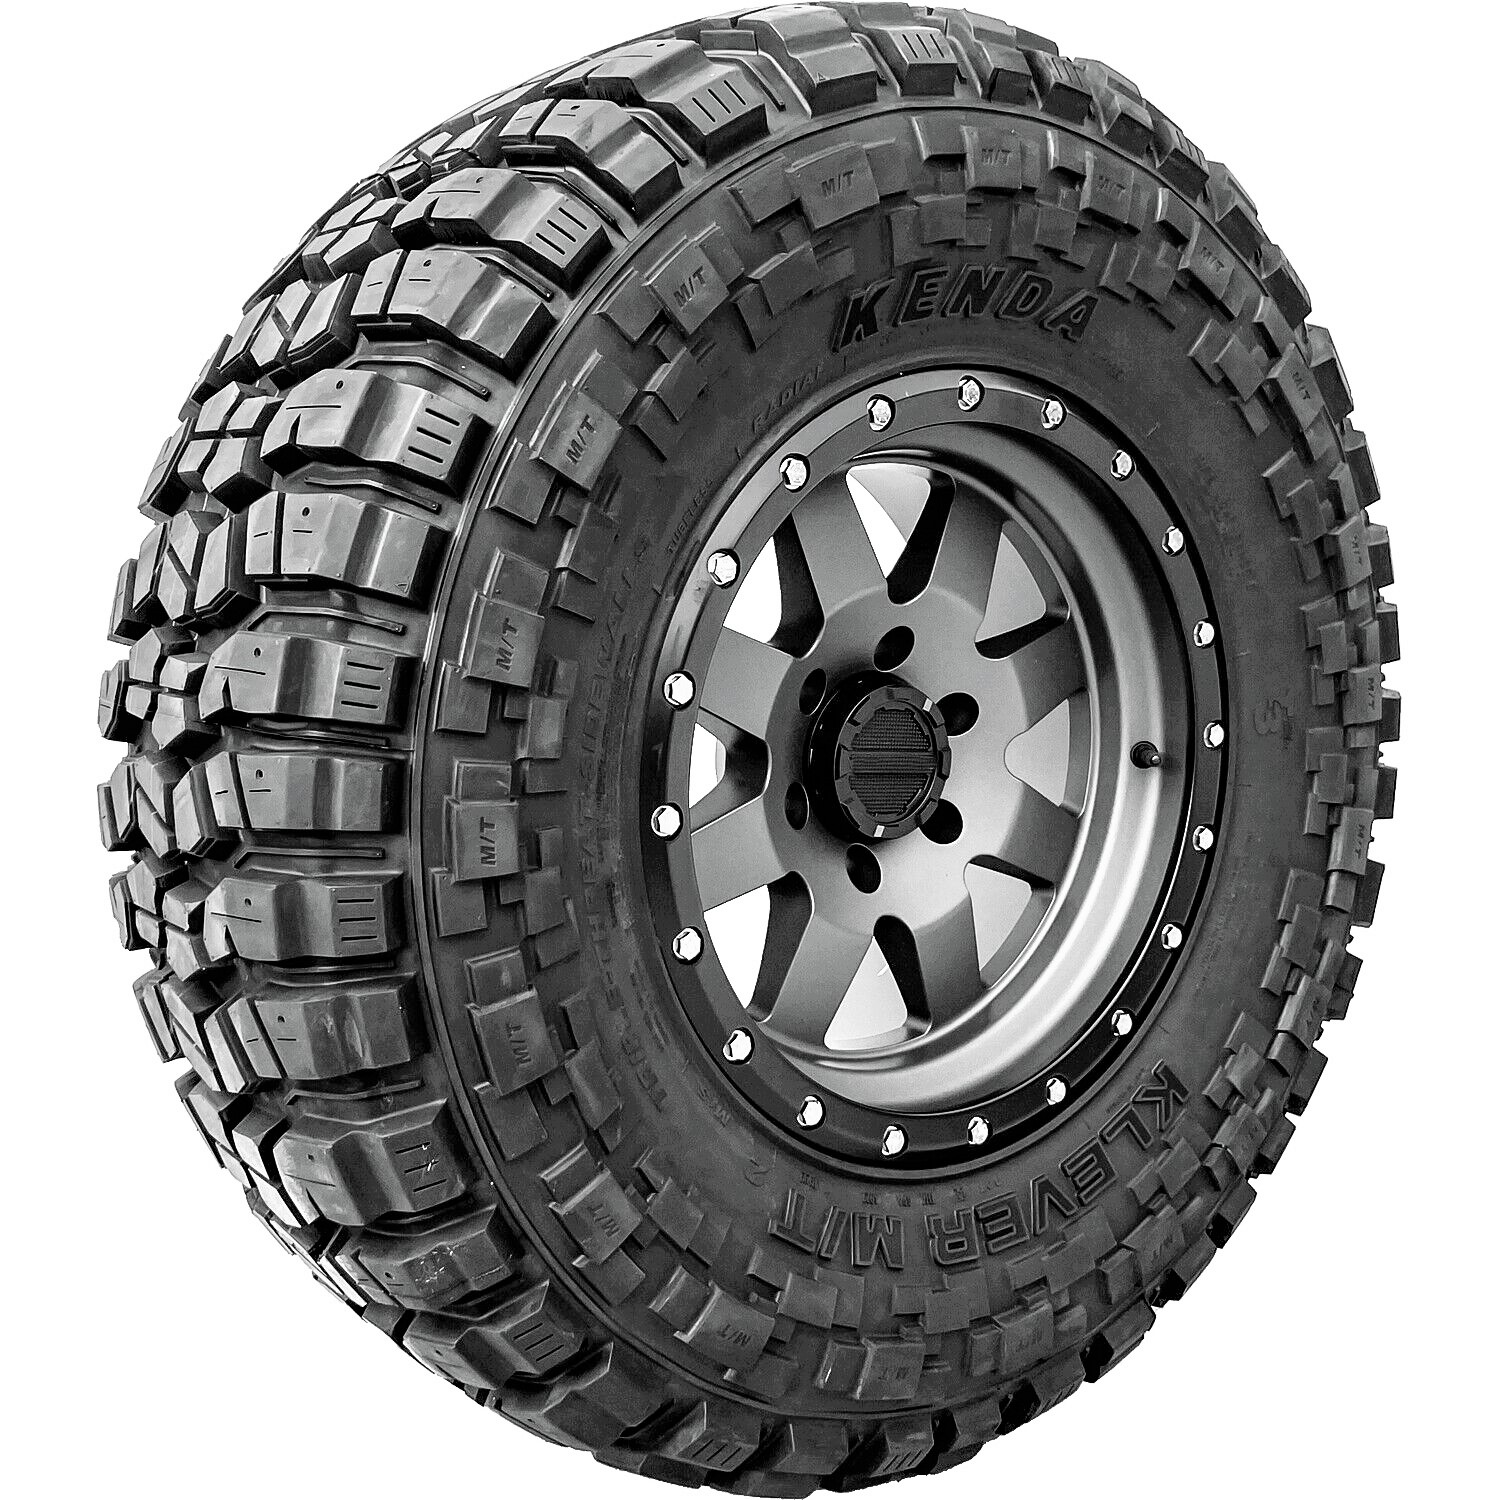 Kenda Klever M/T2 LT 285/70R17 121/118R E (10 Ply) MT M/T Mud Terrain Tire